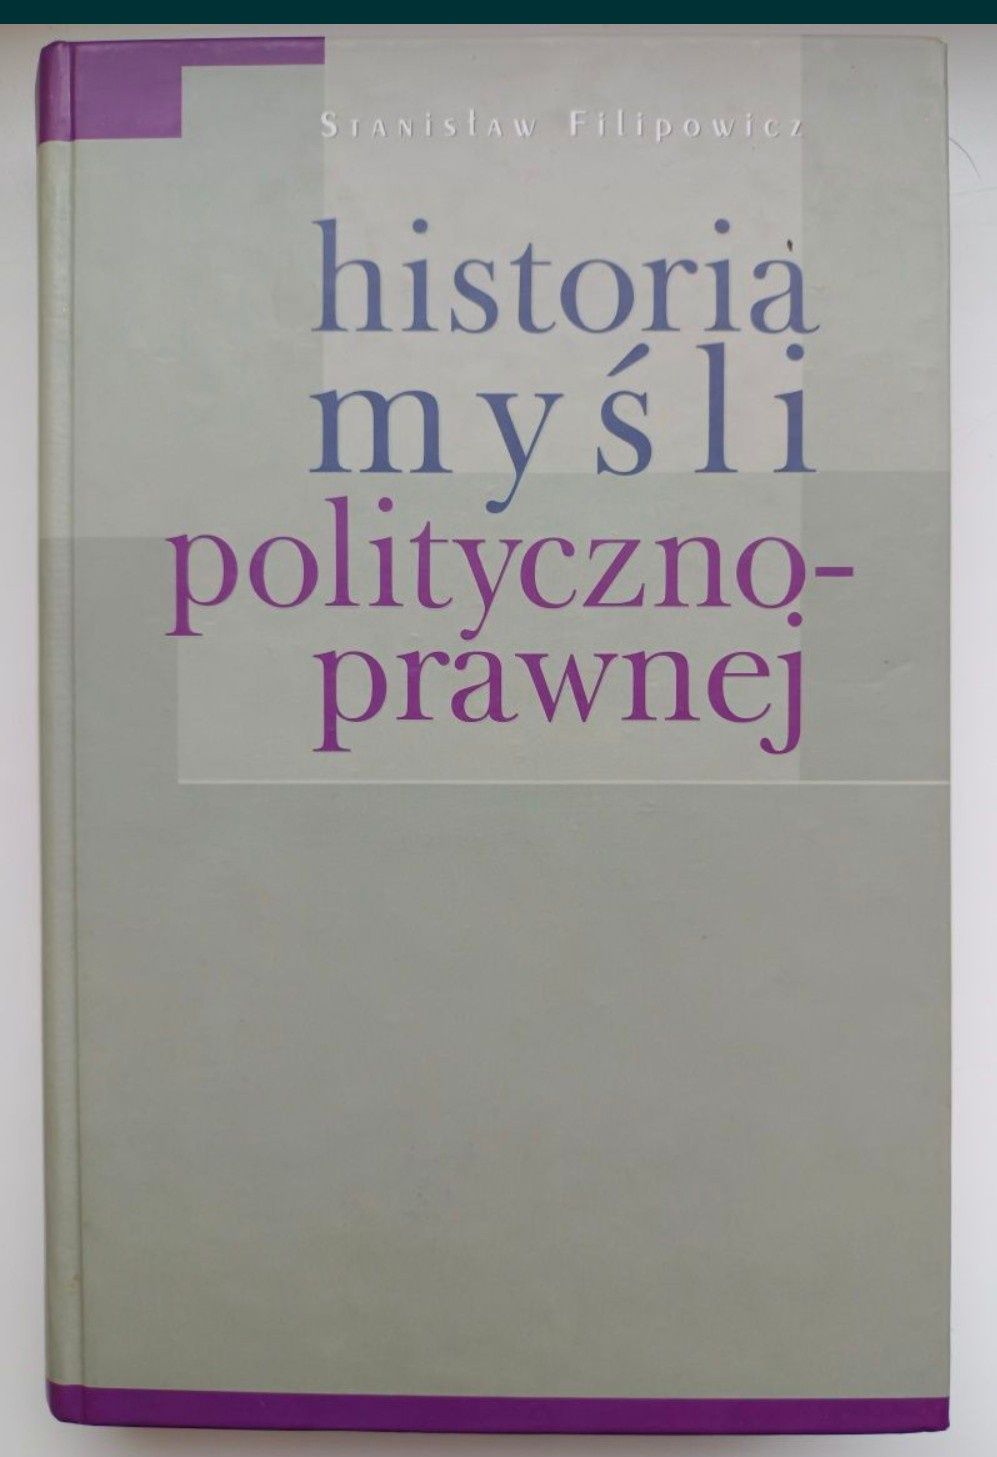 "Historia myśli polityczno-prawnej", Stanisław Filipowicz